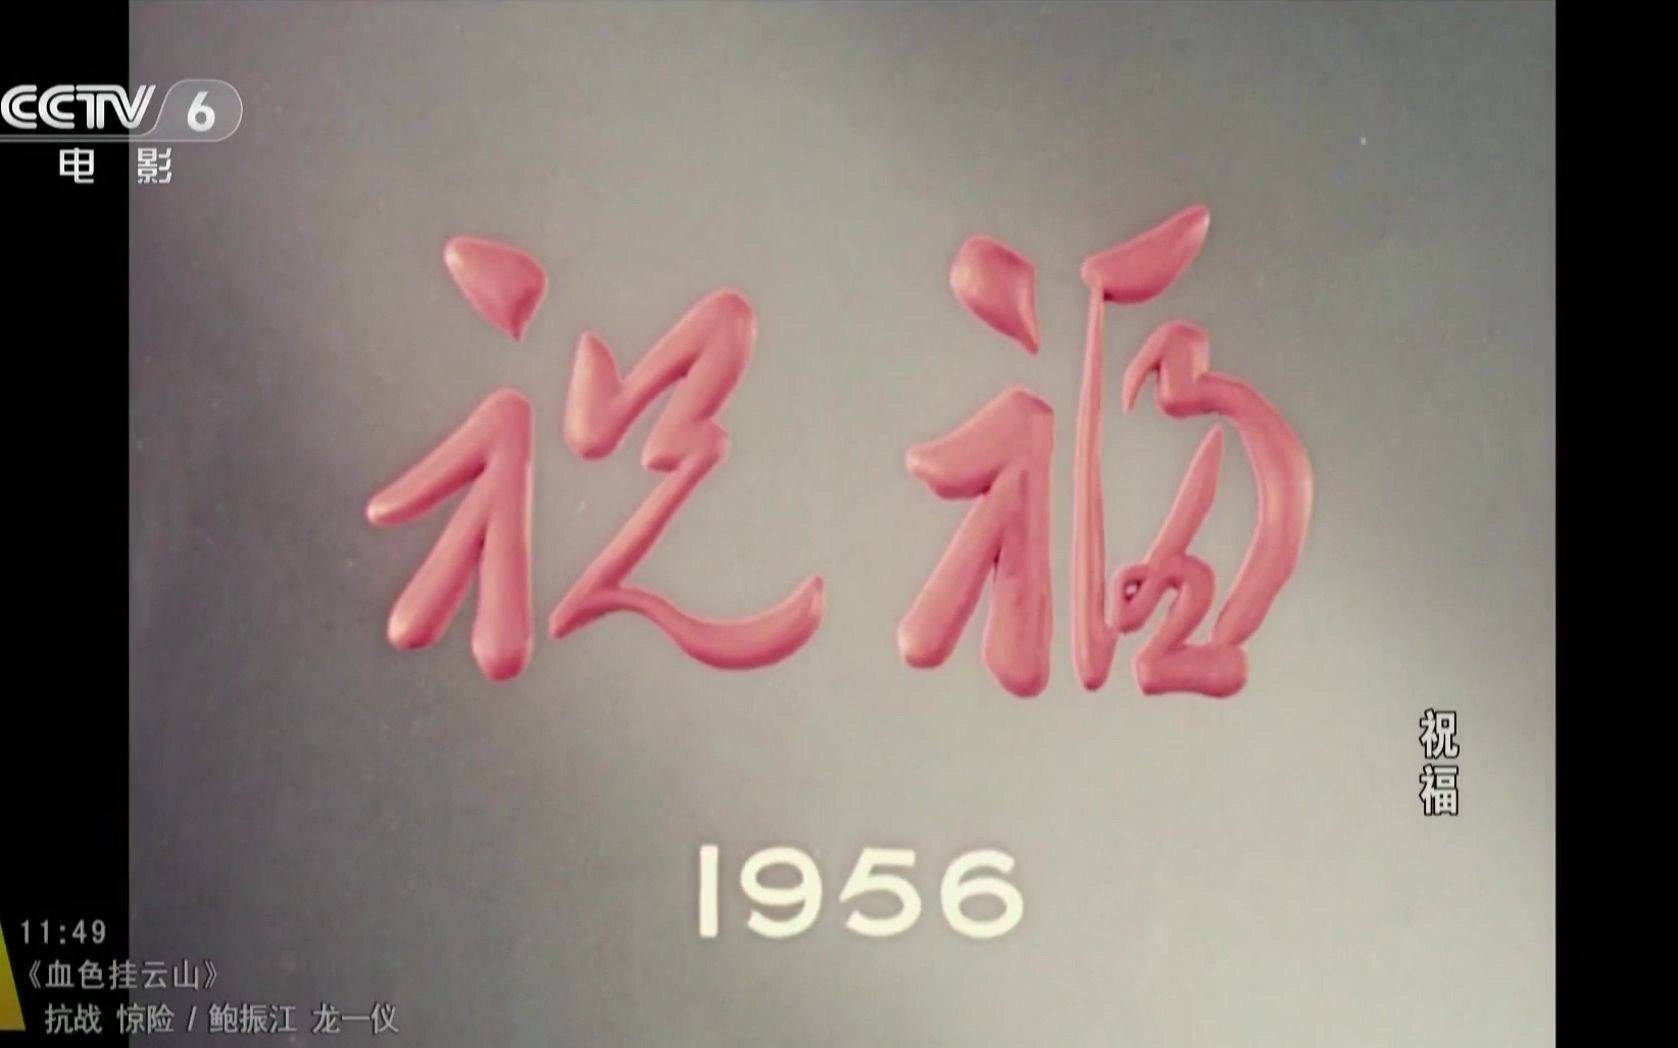 【剧情】祝福 (1956)【CCTV6高清修复版】【1080P】【国语中文字幕】